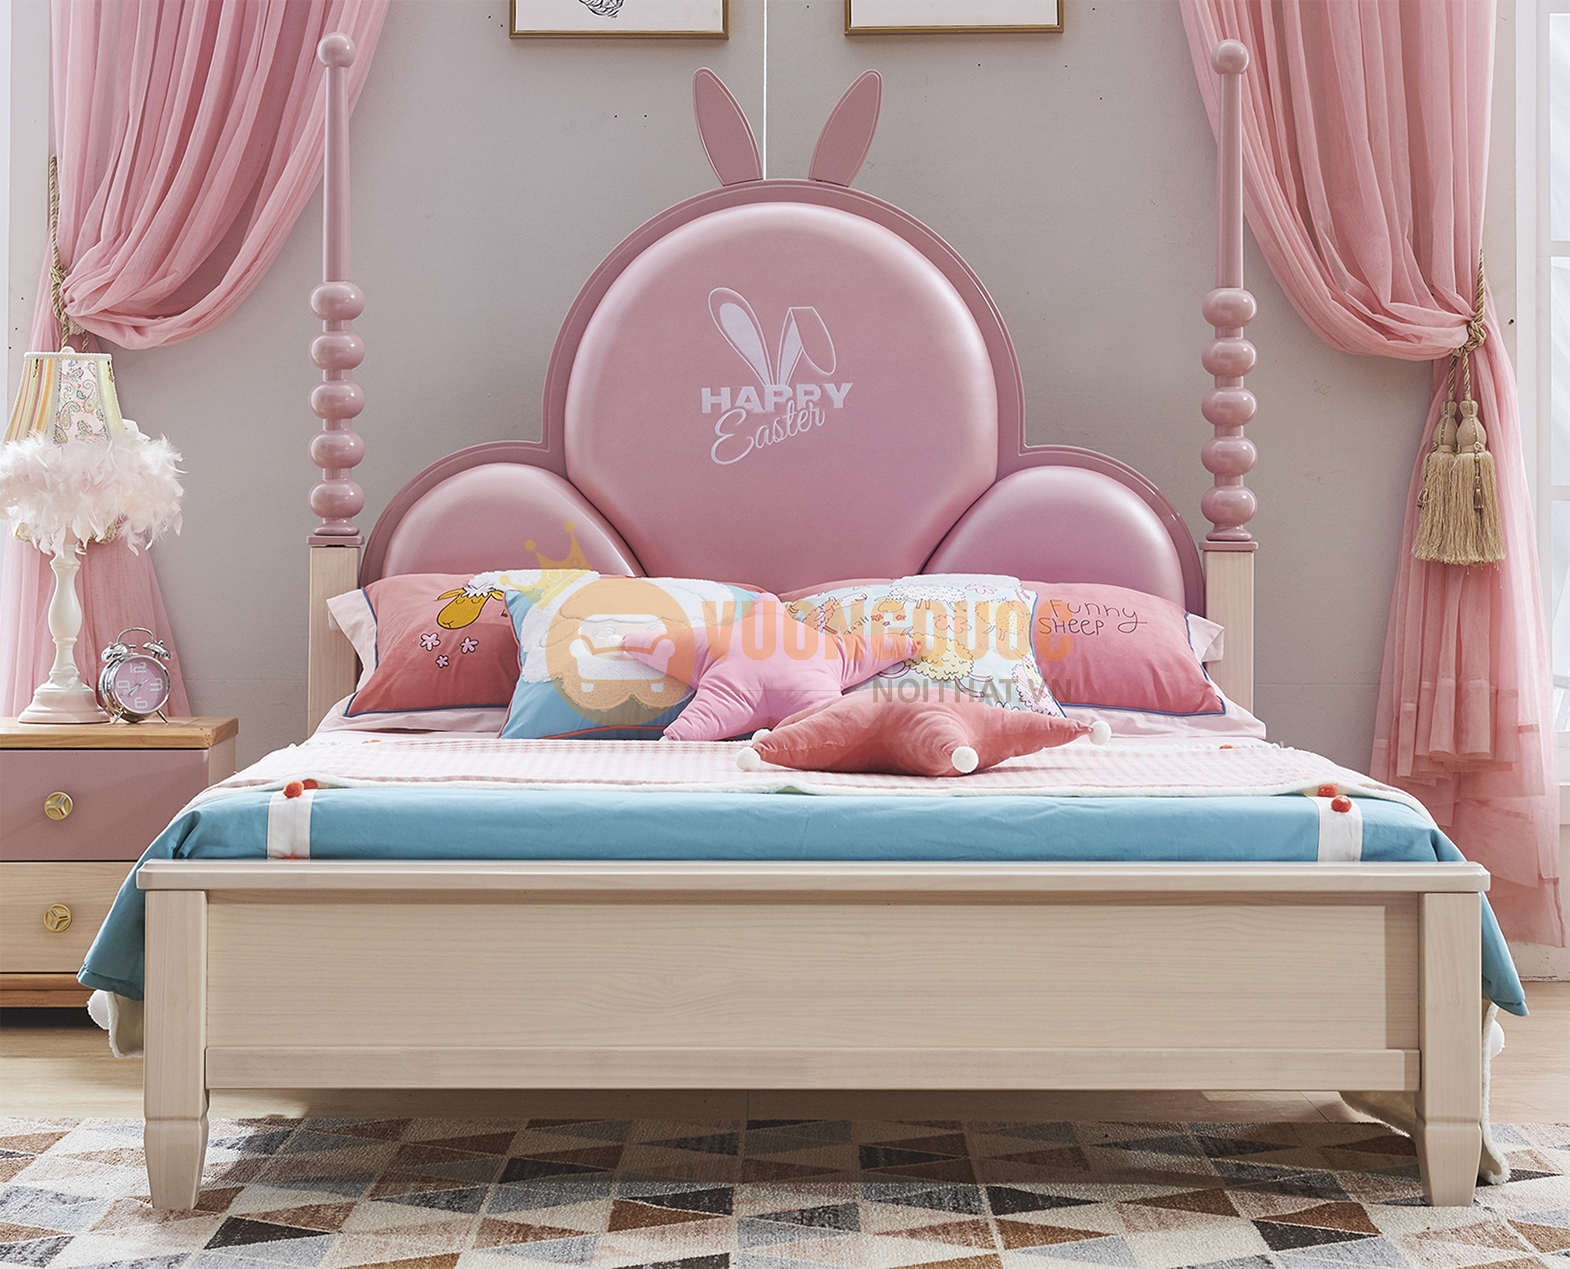 Mẫu giường ngủ công chúa cực kì sang trọng và dành riêng cho những cô công chúa nhỏ của gia đình bạn. Với những chi tiết trang trí tinh tế, giường sẽ khiến bé gái của bạn cảm thấy như thật sự đang sống trong một cung điện. Hãy click vào hình để khám phá sự đẹp đẽ và phù hợp của mẫu giường này cho phòng ngủ của bé.